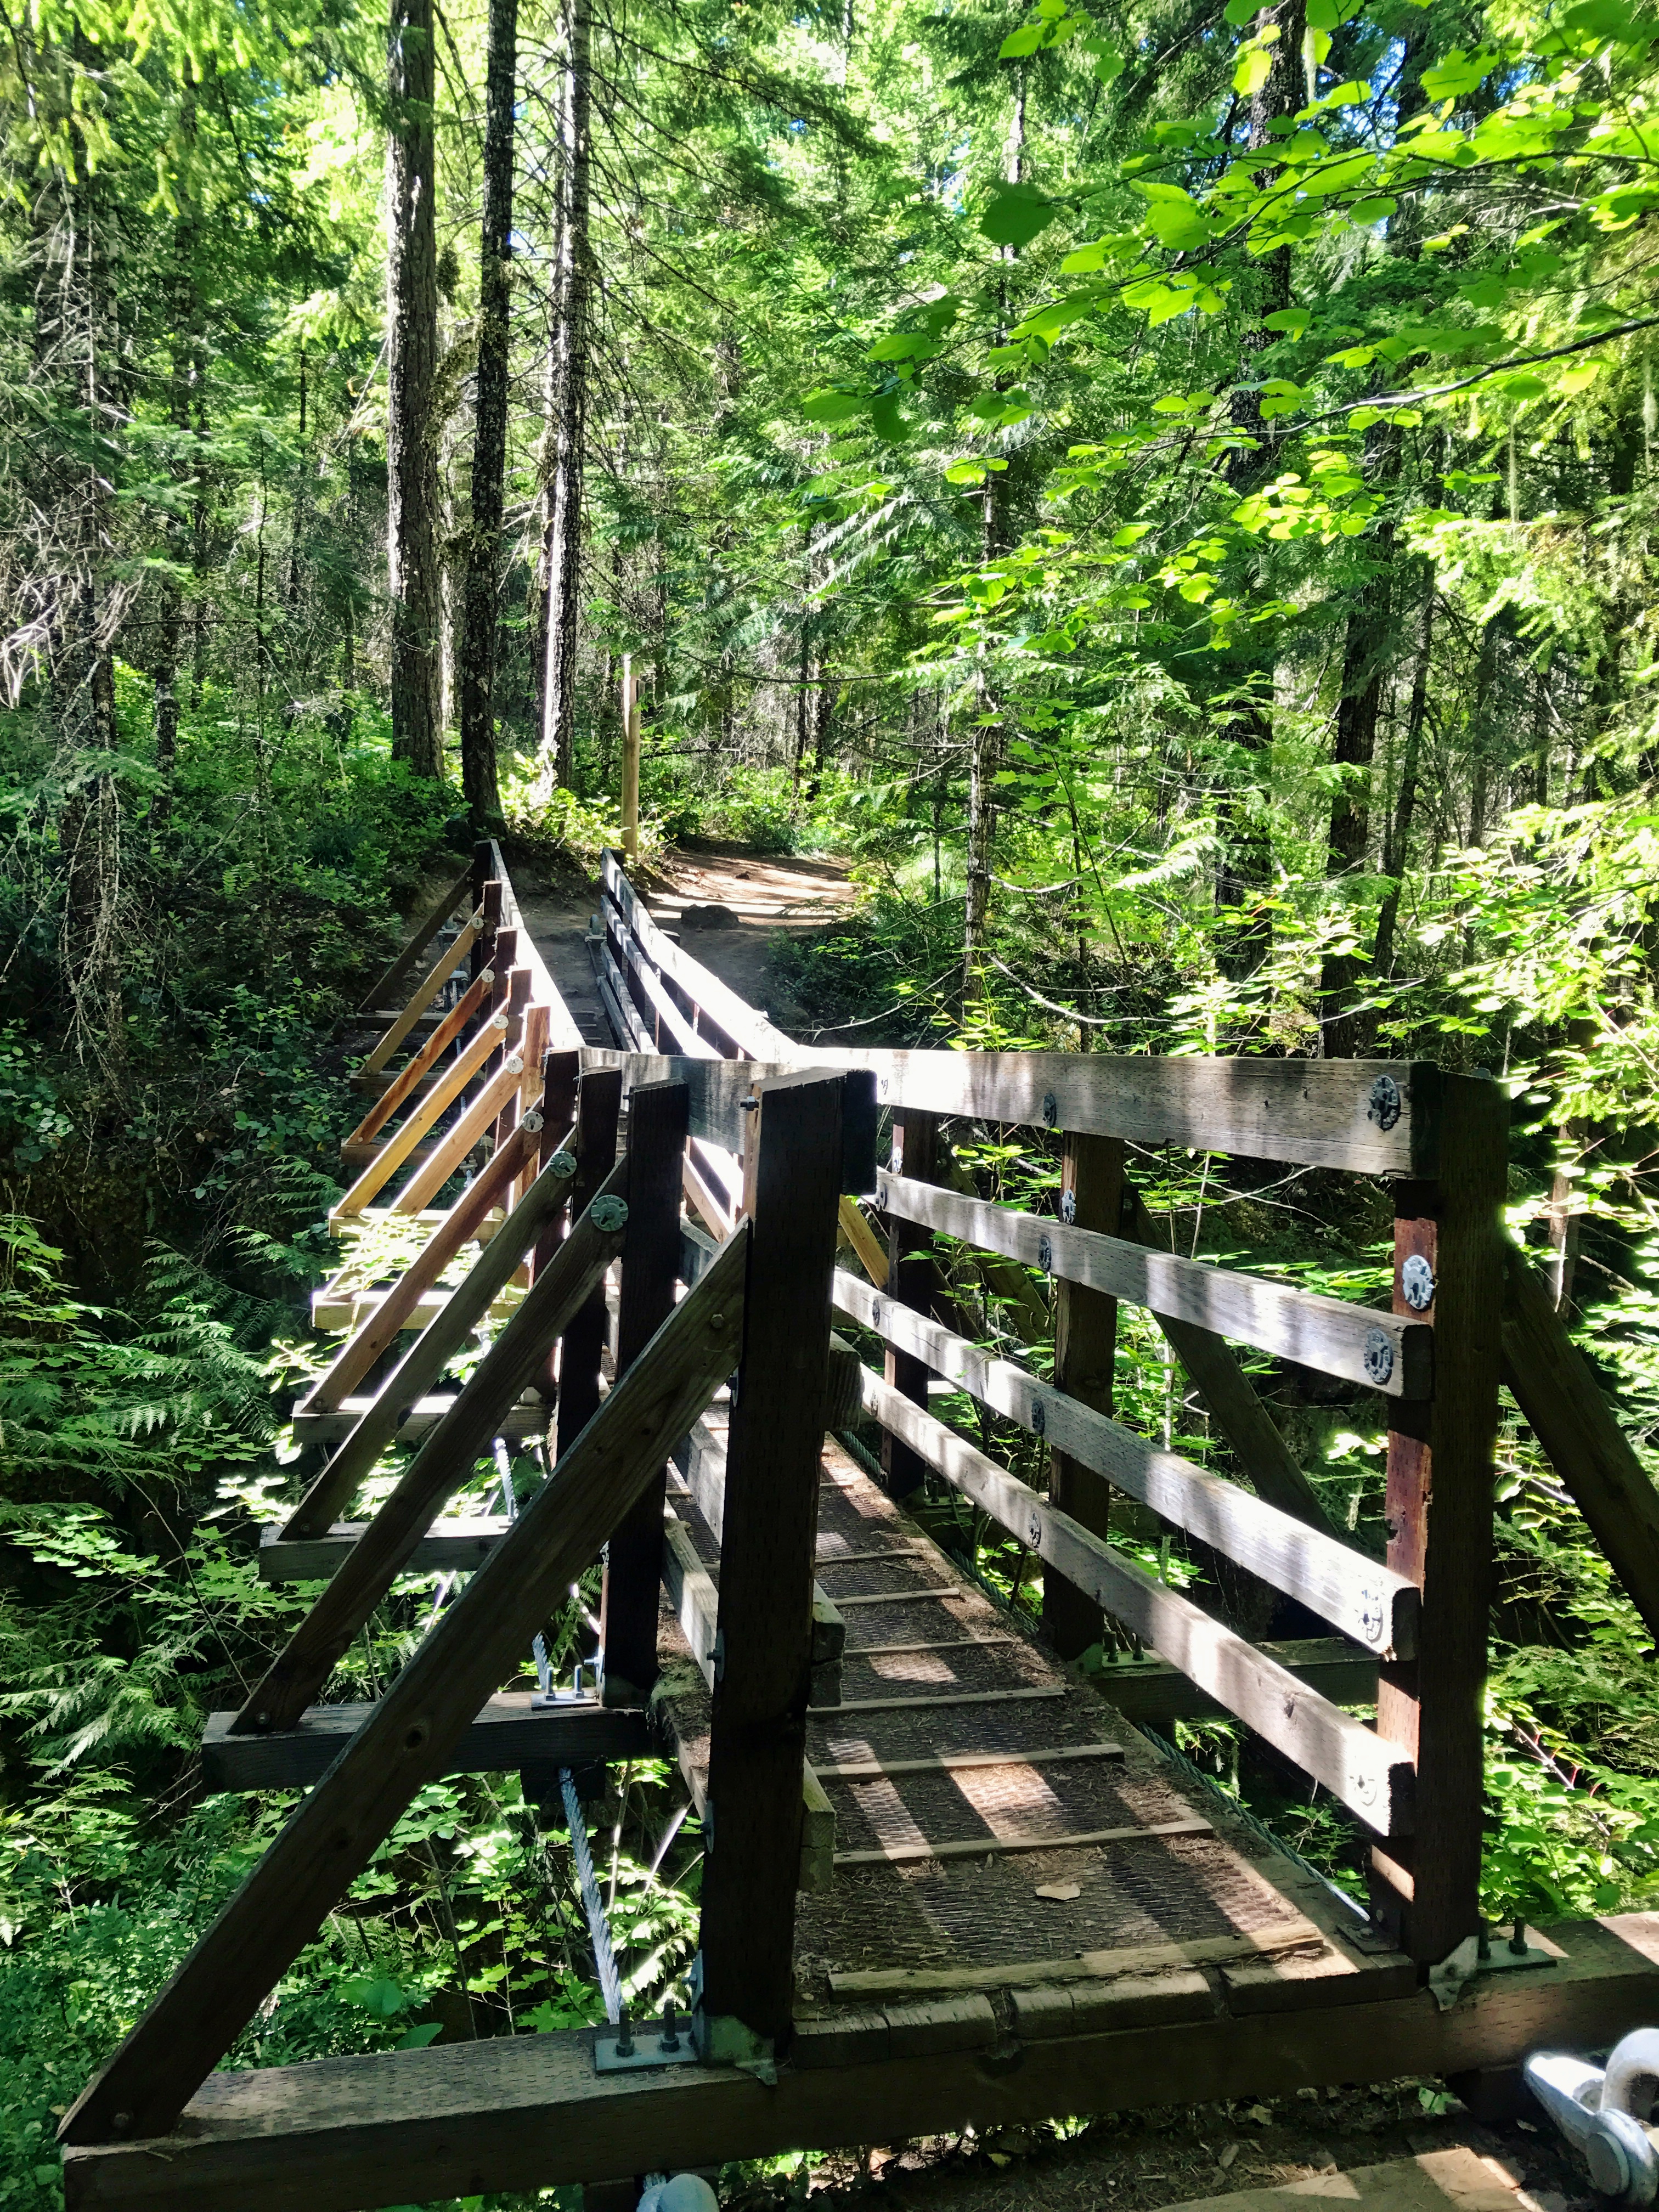 Suspension bridge along Falls creek falls trail